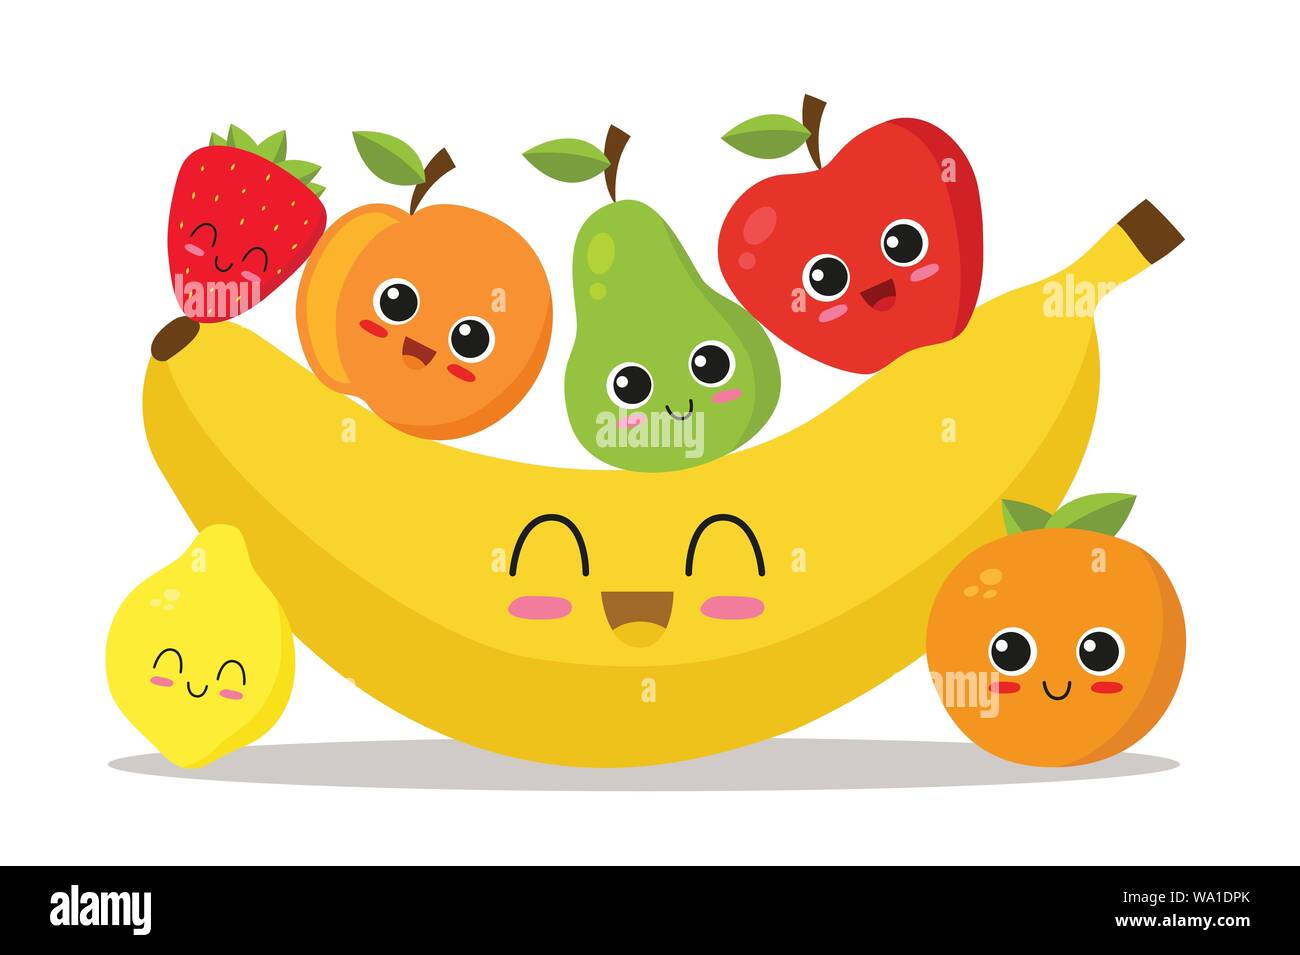 Dibujos animados de frutas fotografías e imágenes de alta resolución - Alamy